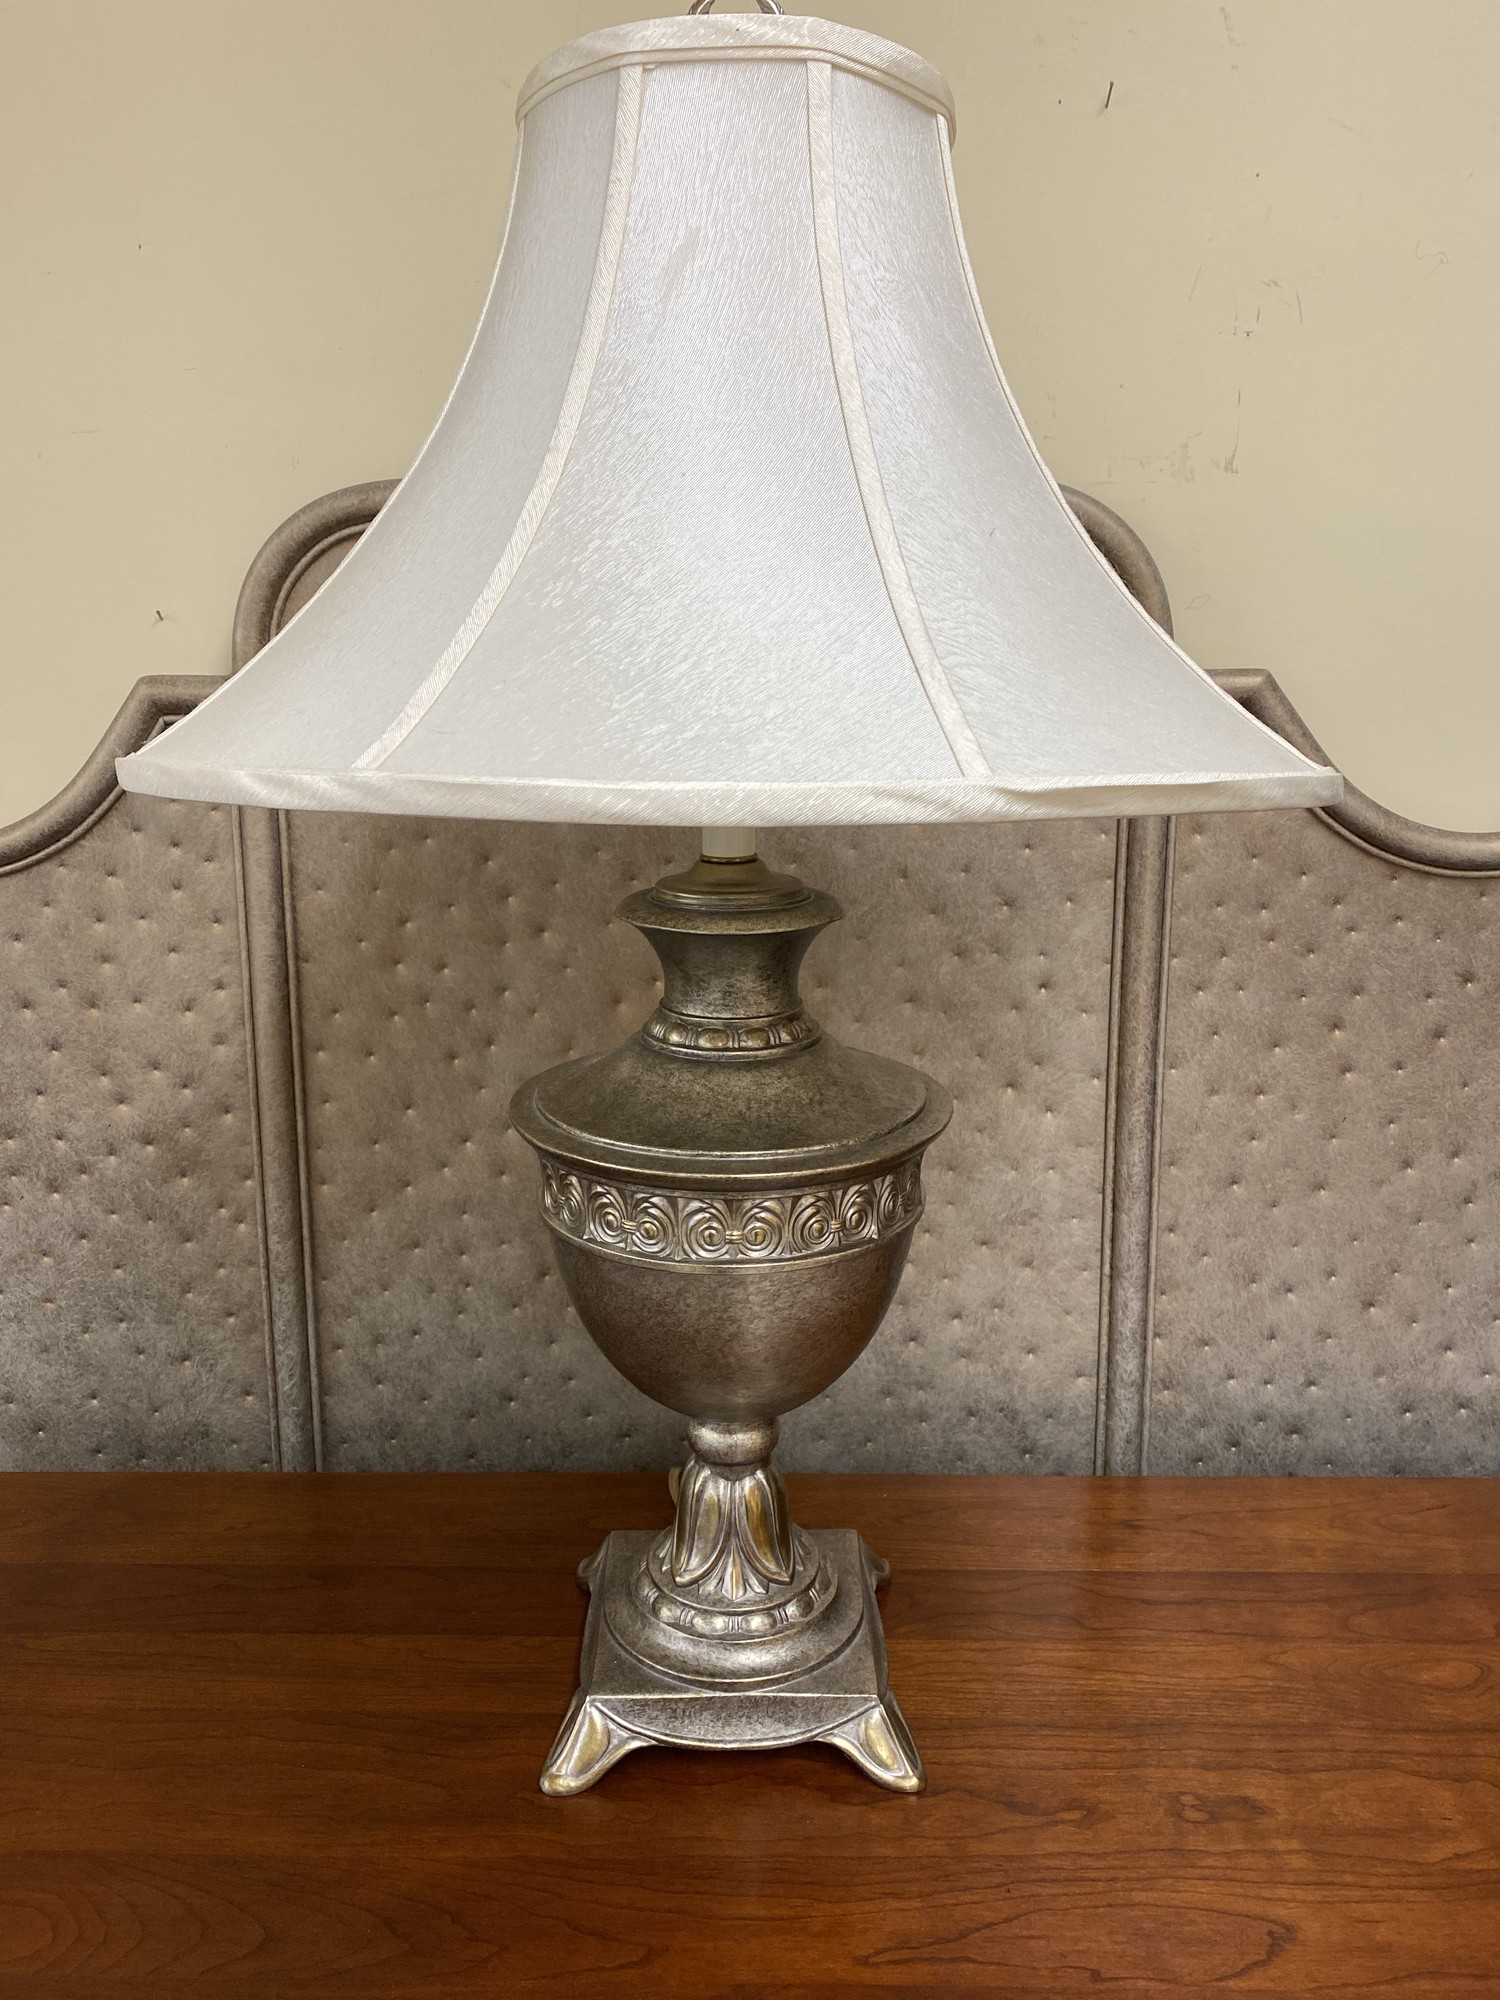 Adams Milano Lamp | Saratoga Consignment Studio